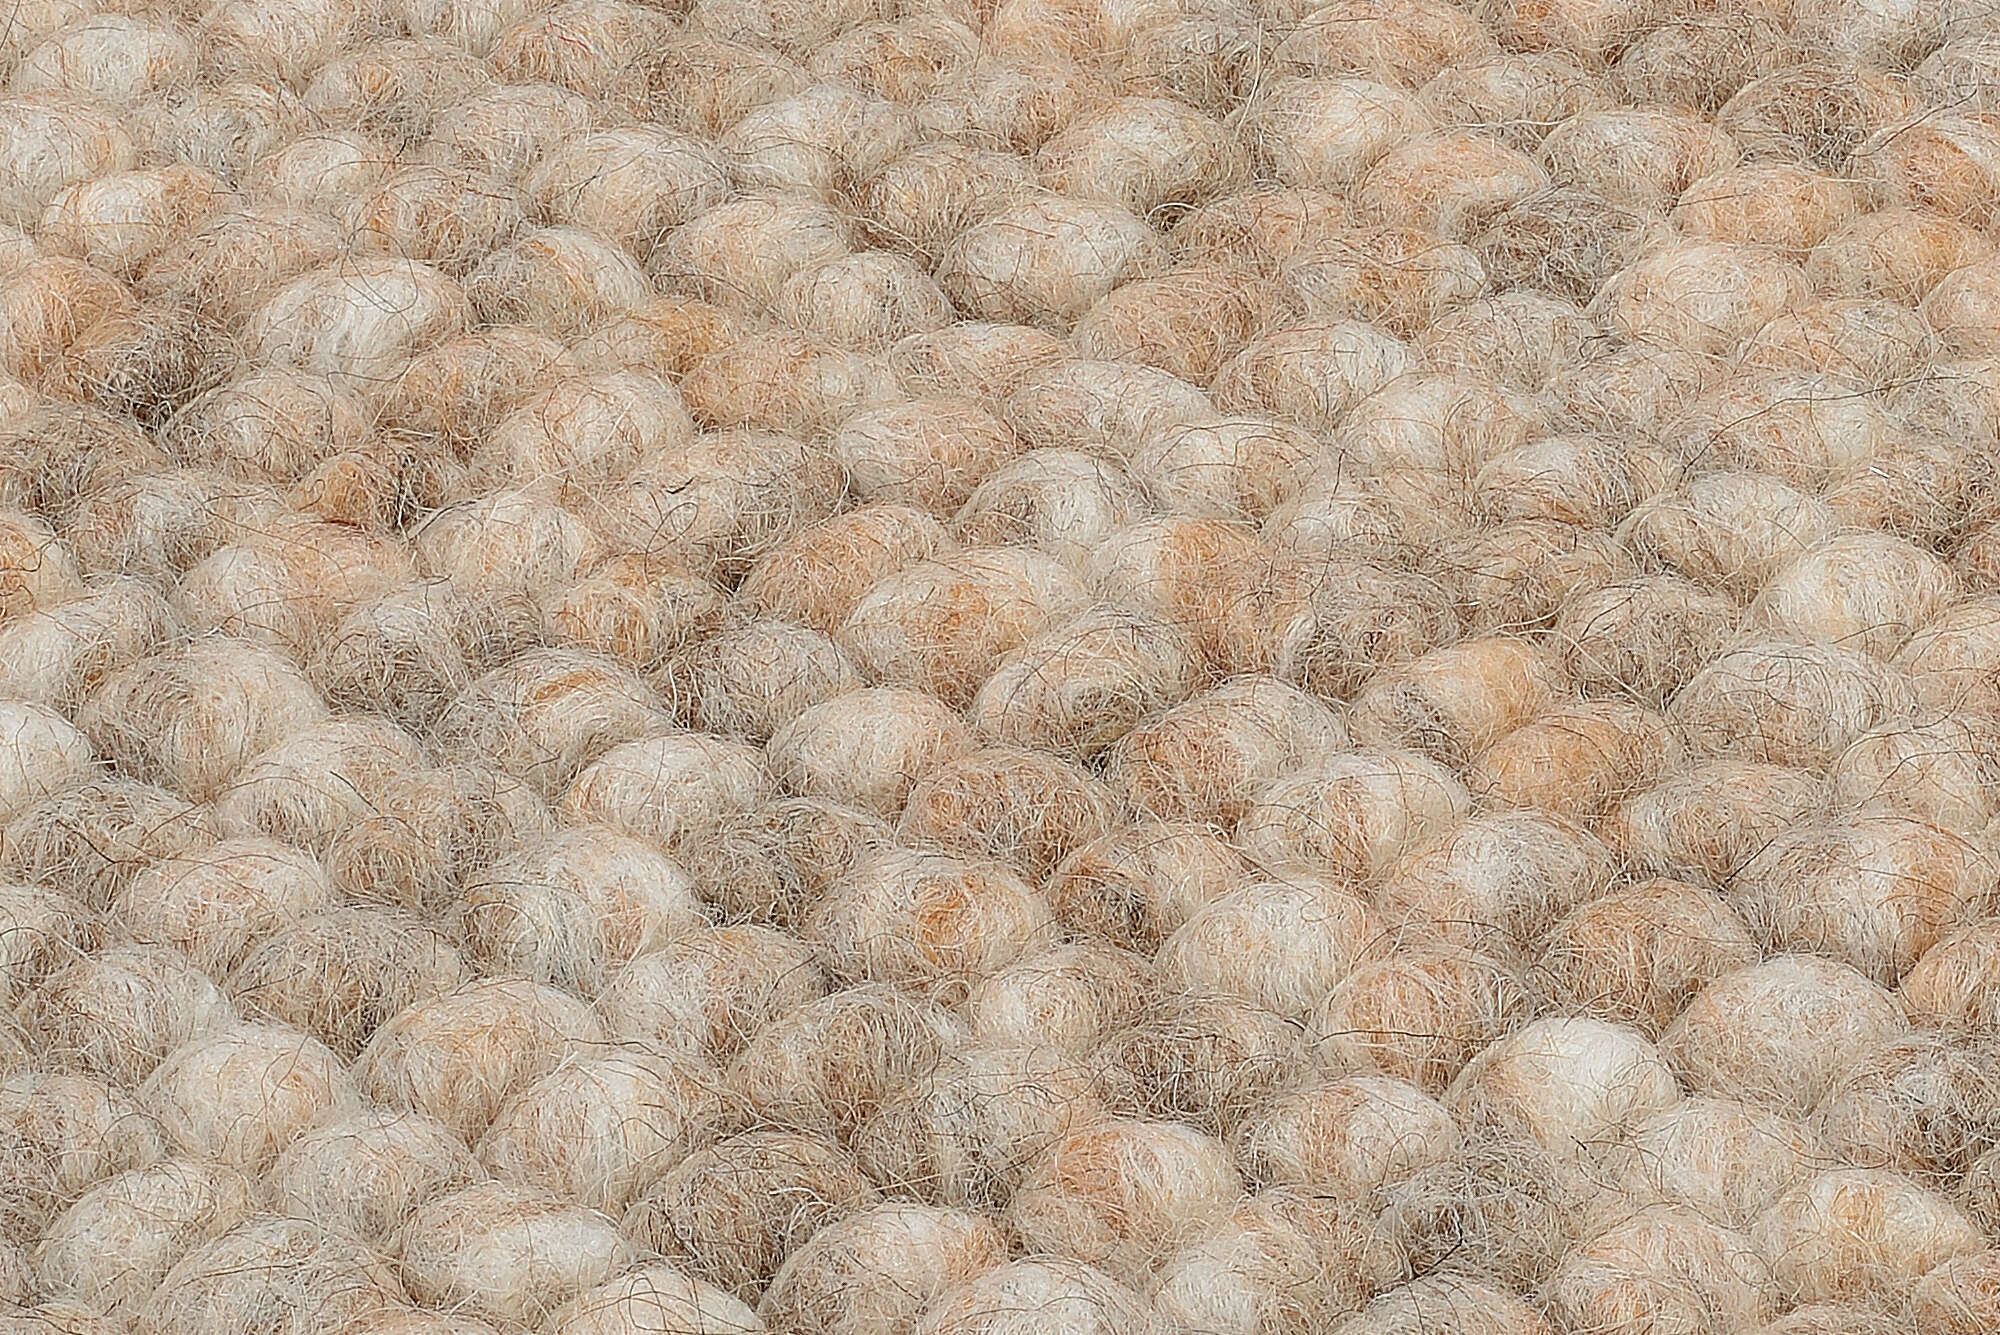 Handweb Teppich Naturteppich "Favorit" Schurwollteppich Gewalkte Wolle